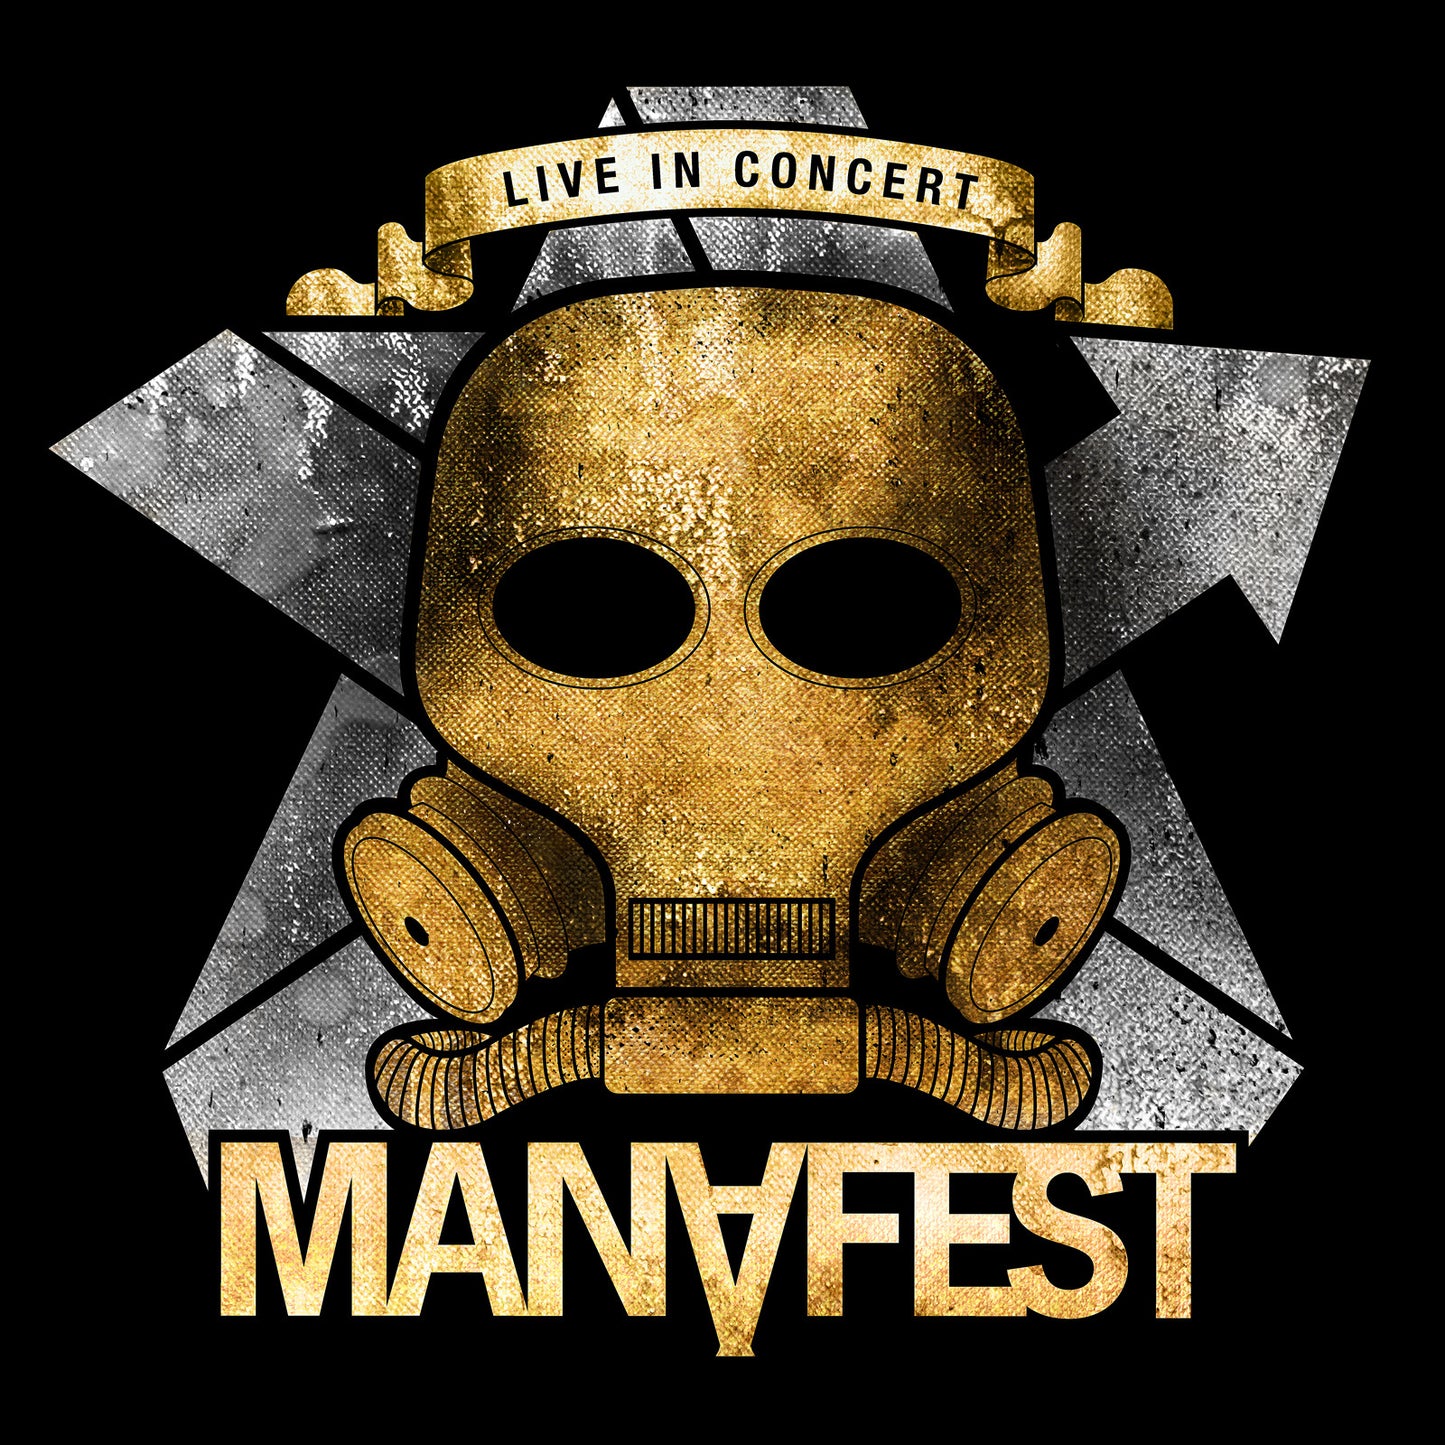 Manafest Live In Concert CD/DVD (digital download)